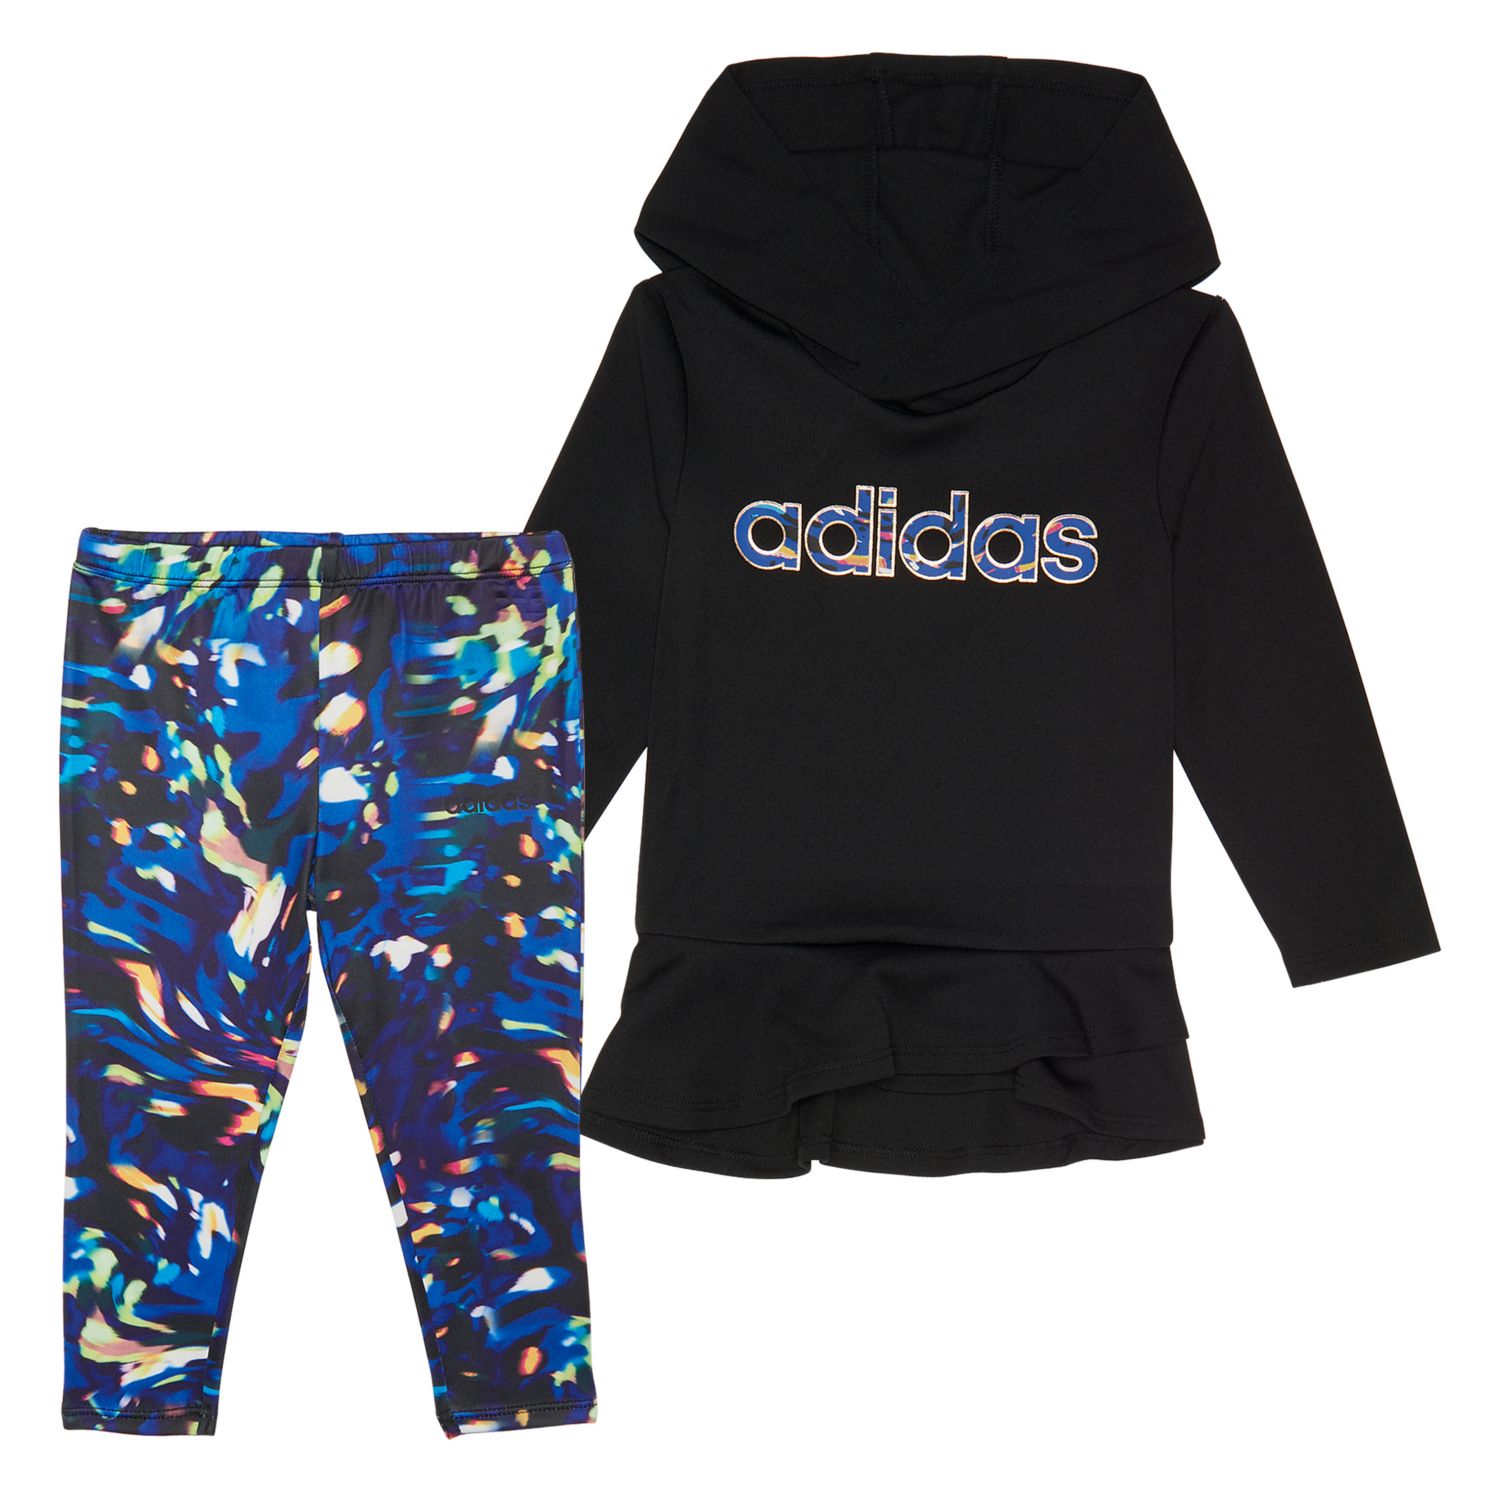 adidas hoodie and leggings set